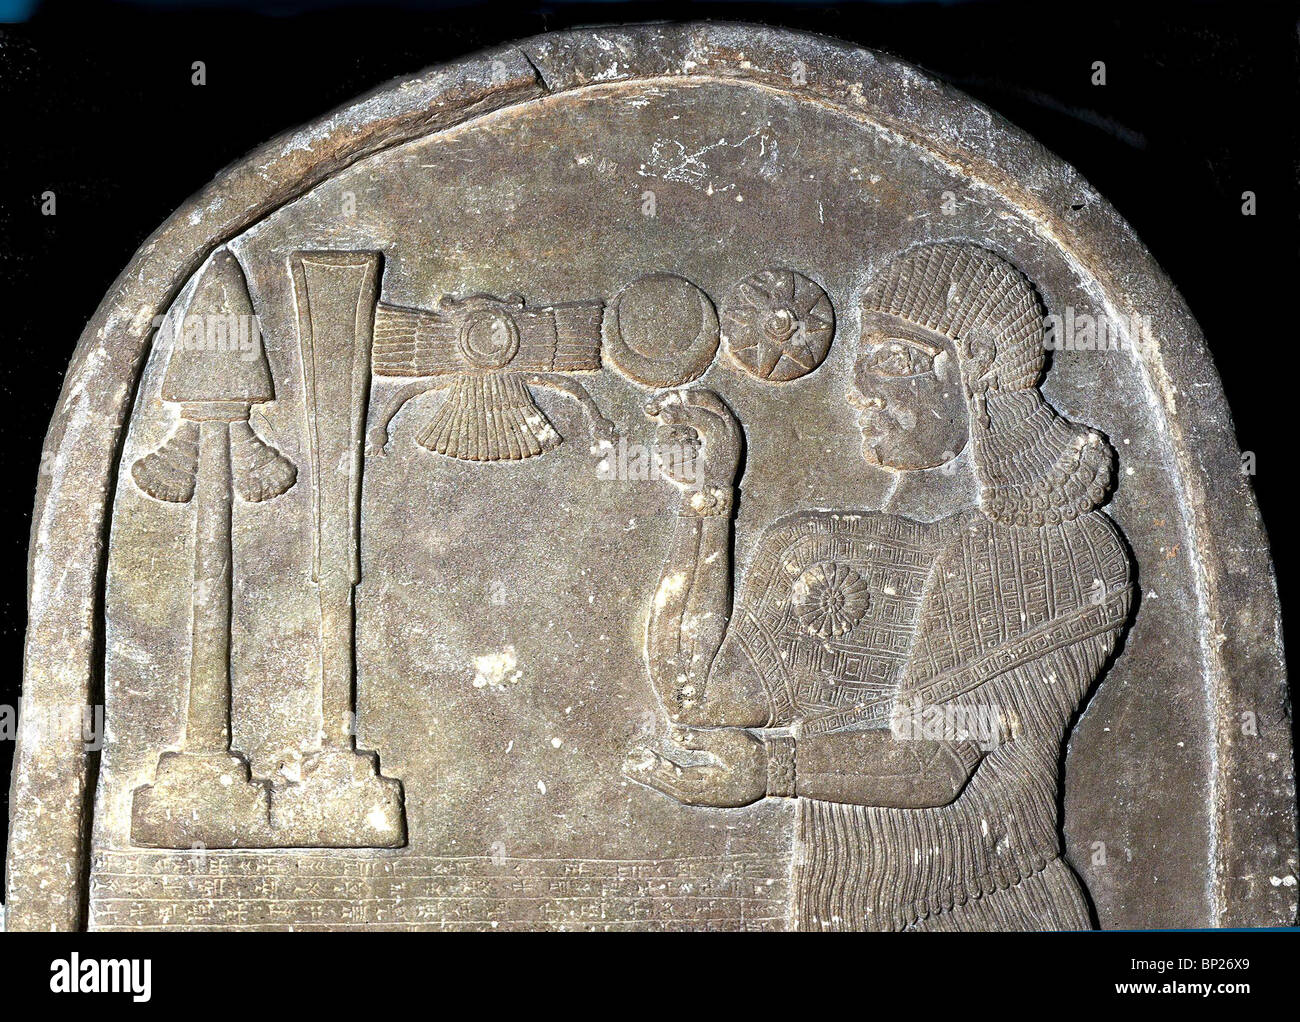 1315. KÖNIG TIGLAT-PILESER III. VEREHRUNG DER GÖTTLICHEN EMBLEME, ASSYRIEN, 8. B.C. Stockfoto